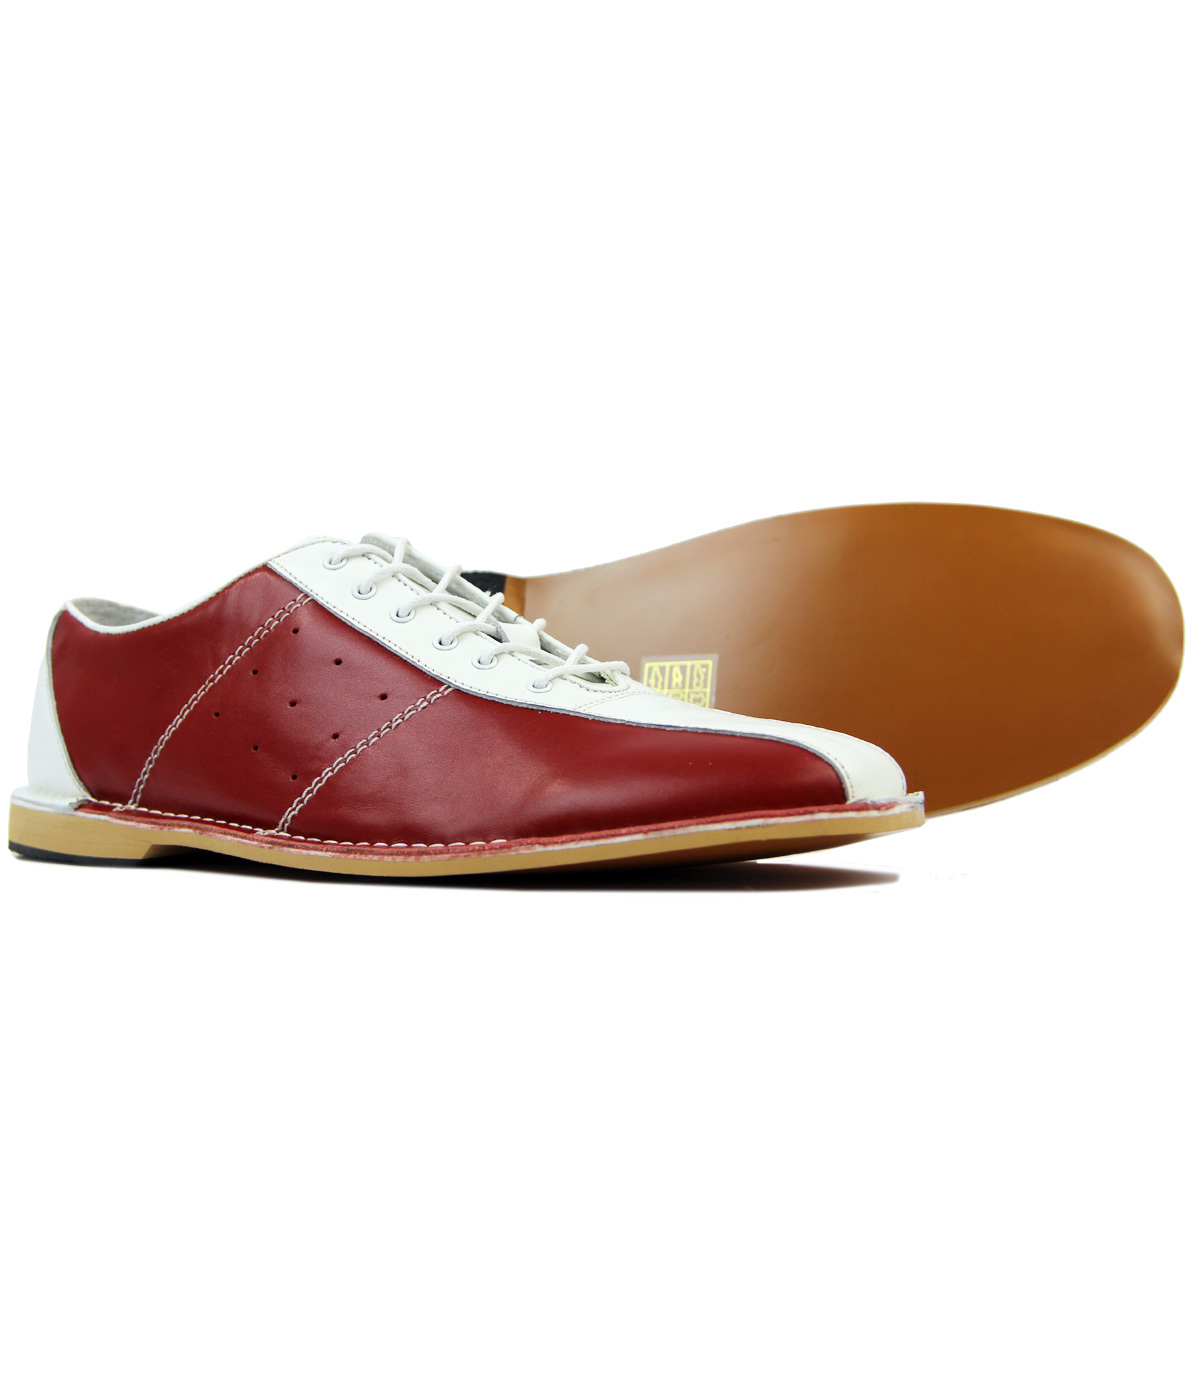 MADCAP ENGLAND All Up Retro 60s Mod Bowling Shoes Red/Blue